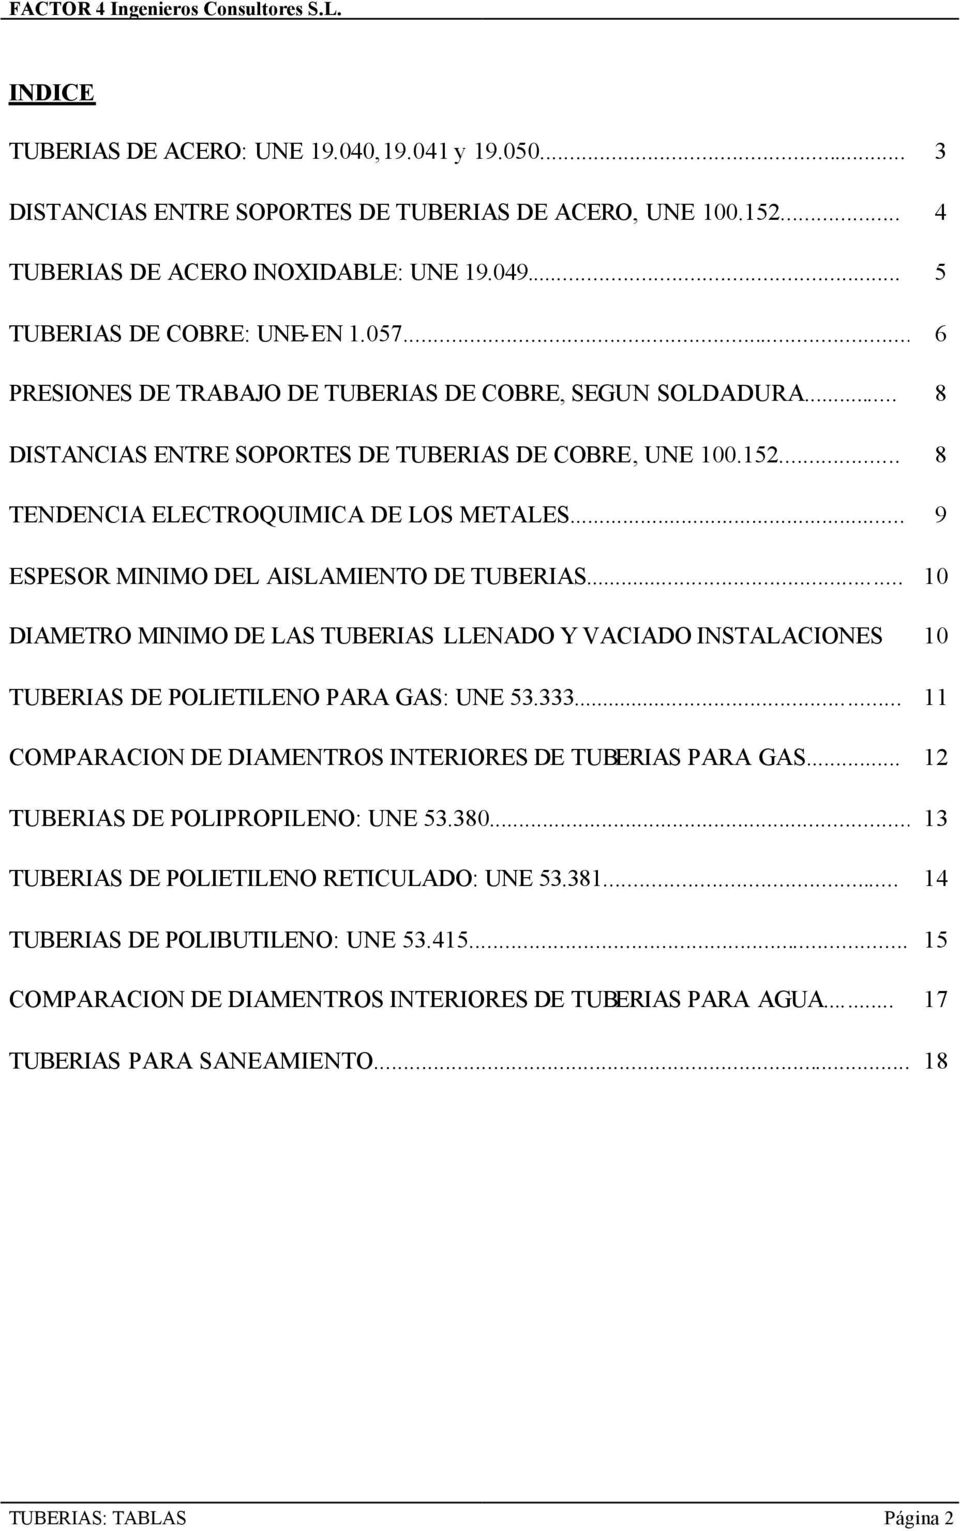 .. 9 ESPESOR MINIMO DEL AISLAMIENTO DE TUBERIAS... 10 DIAMETRO MINIMO DE LAS TUBERIAS LLENADO Y VACIADO INSTALACIONES 10 TUBERIAS DE POLIETILENO PARA GAS: UNE 53.333.